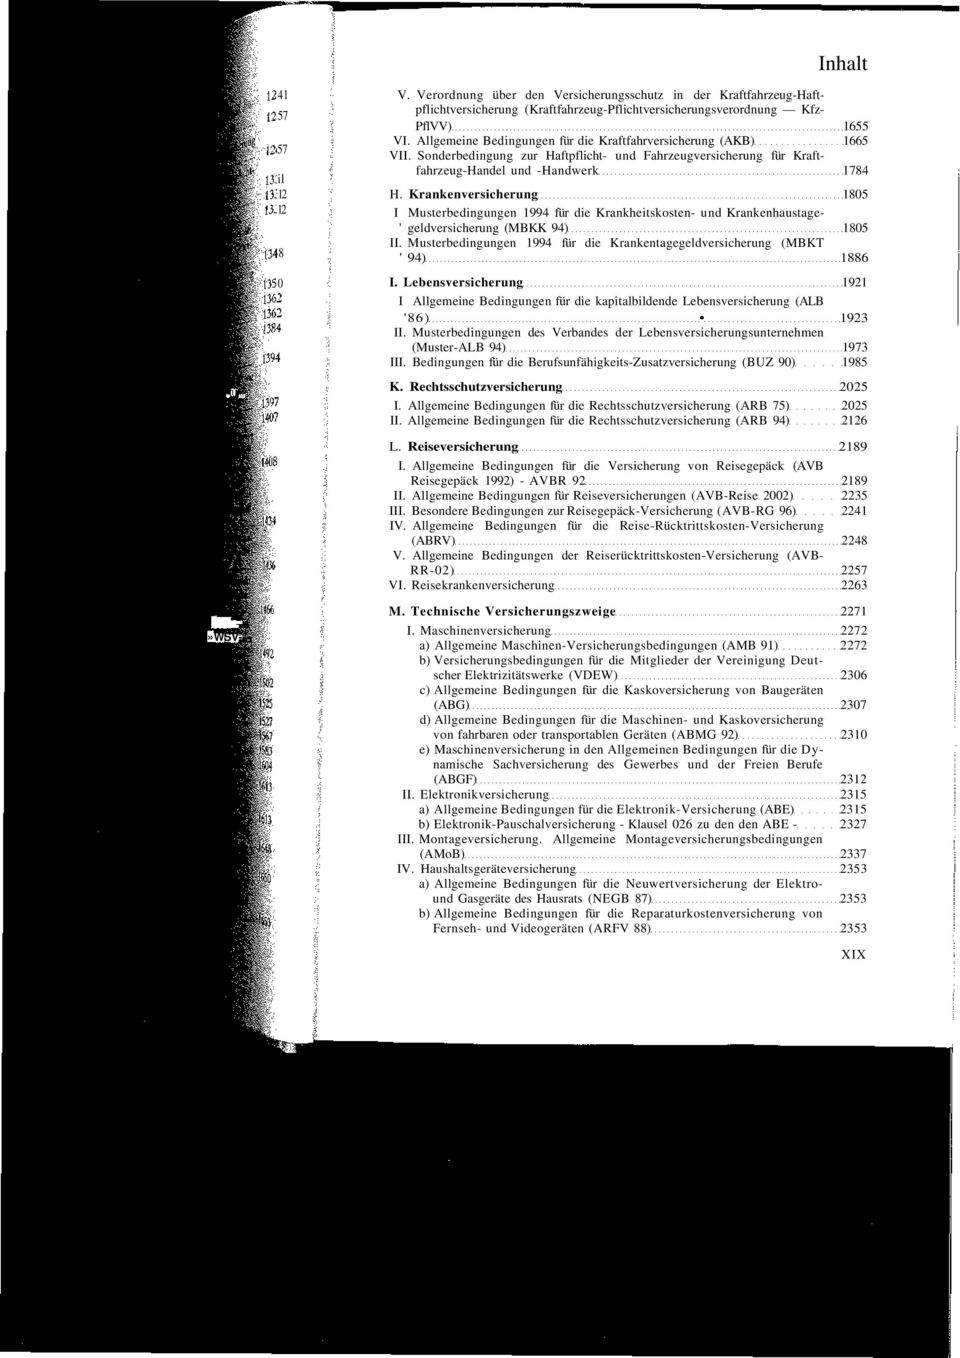 Krankenversicherung 1805 I Musterbedingungen 1994 für die Krankheitskosten- und Krankenhaustage- ' geldversicherung (MBKK 94) 1805 II.